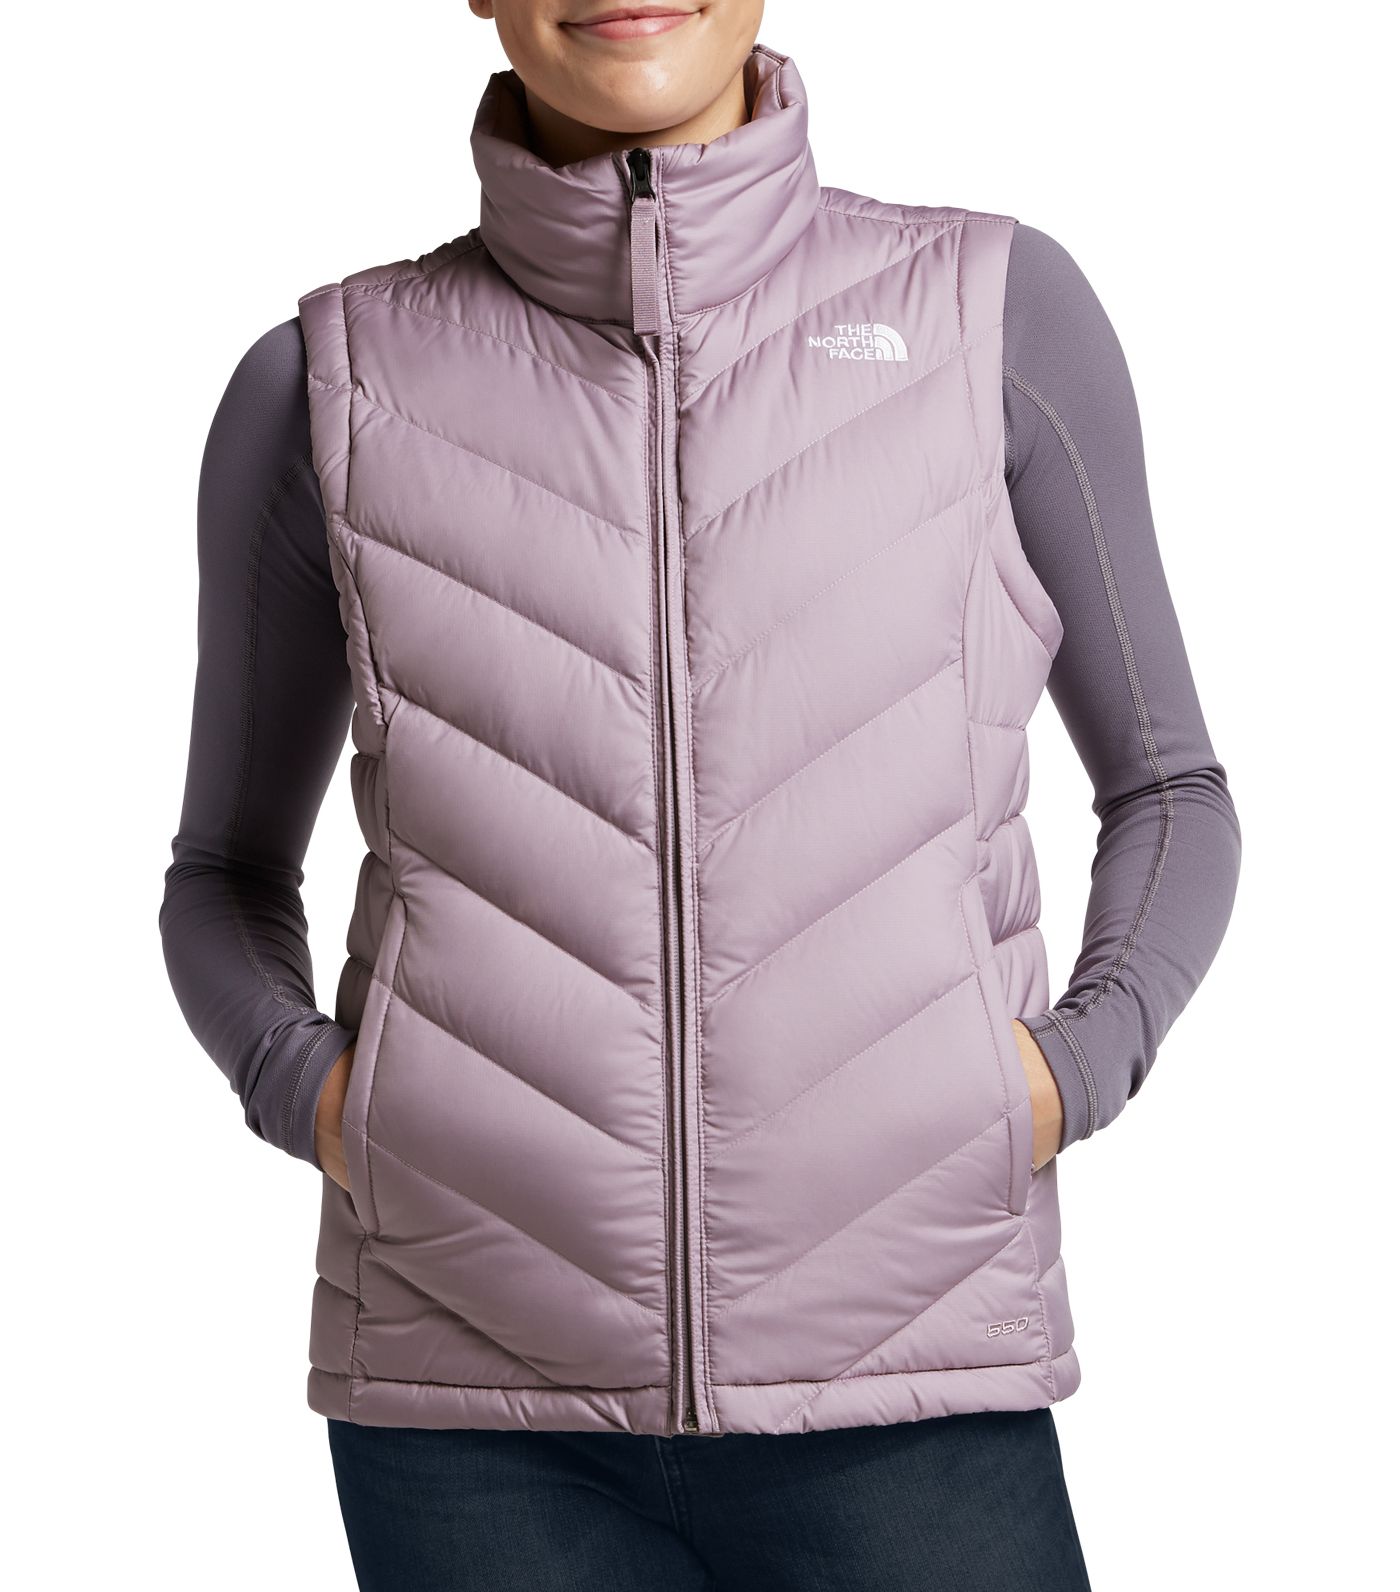 The North Face Vests Deals! Women's Alpz 2.0 Down Vest on sale!